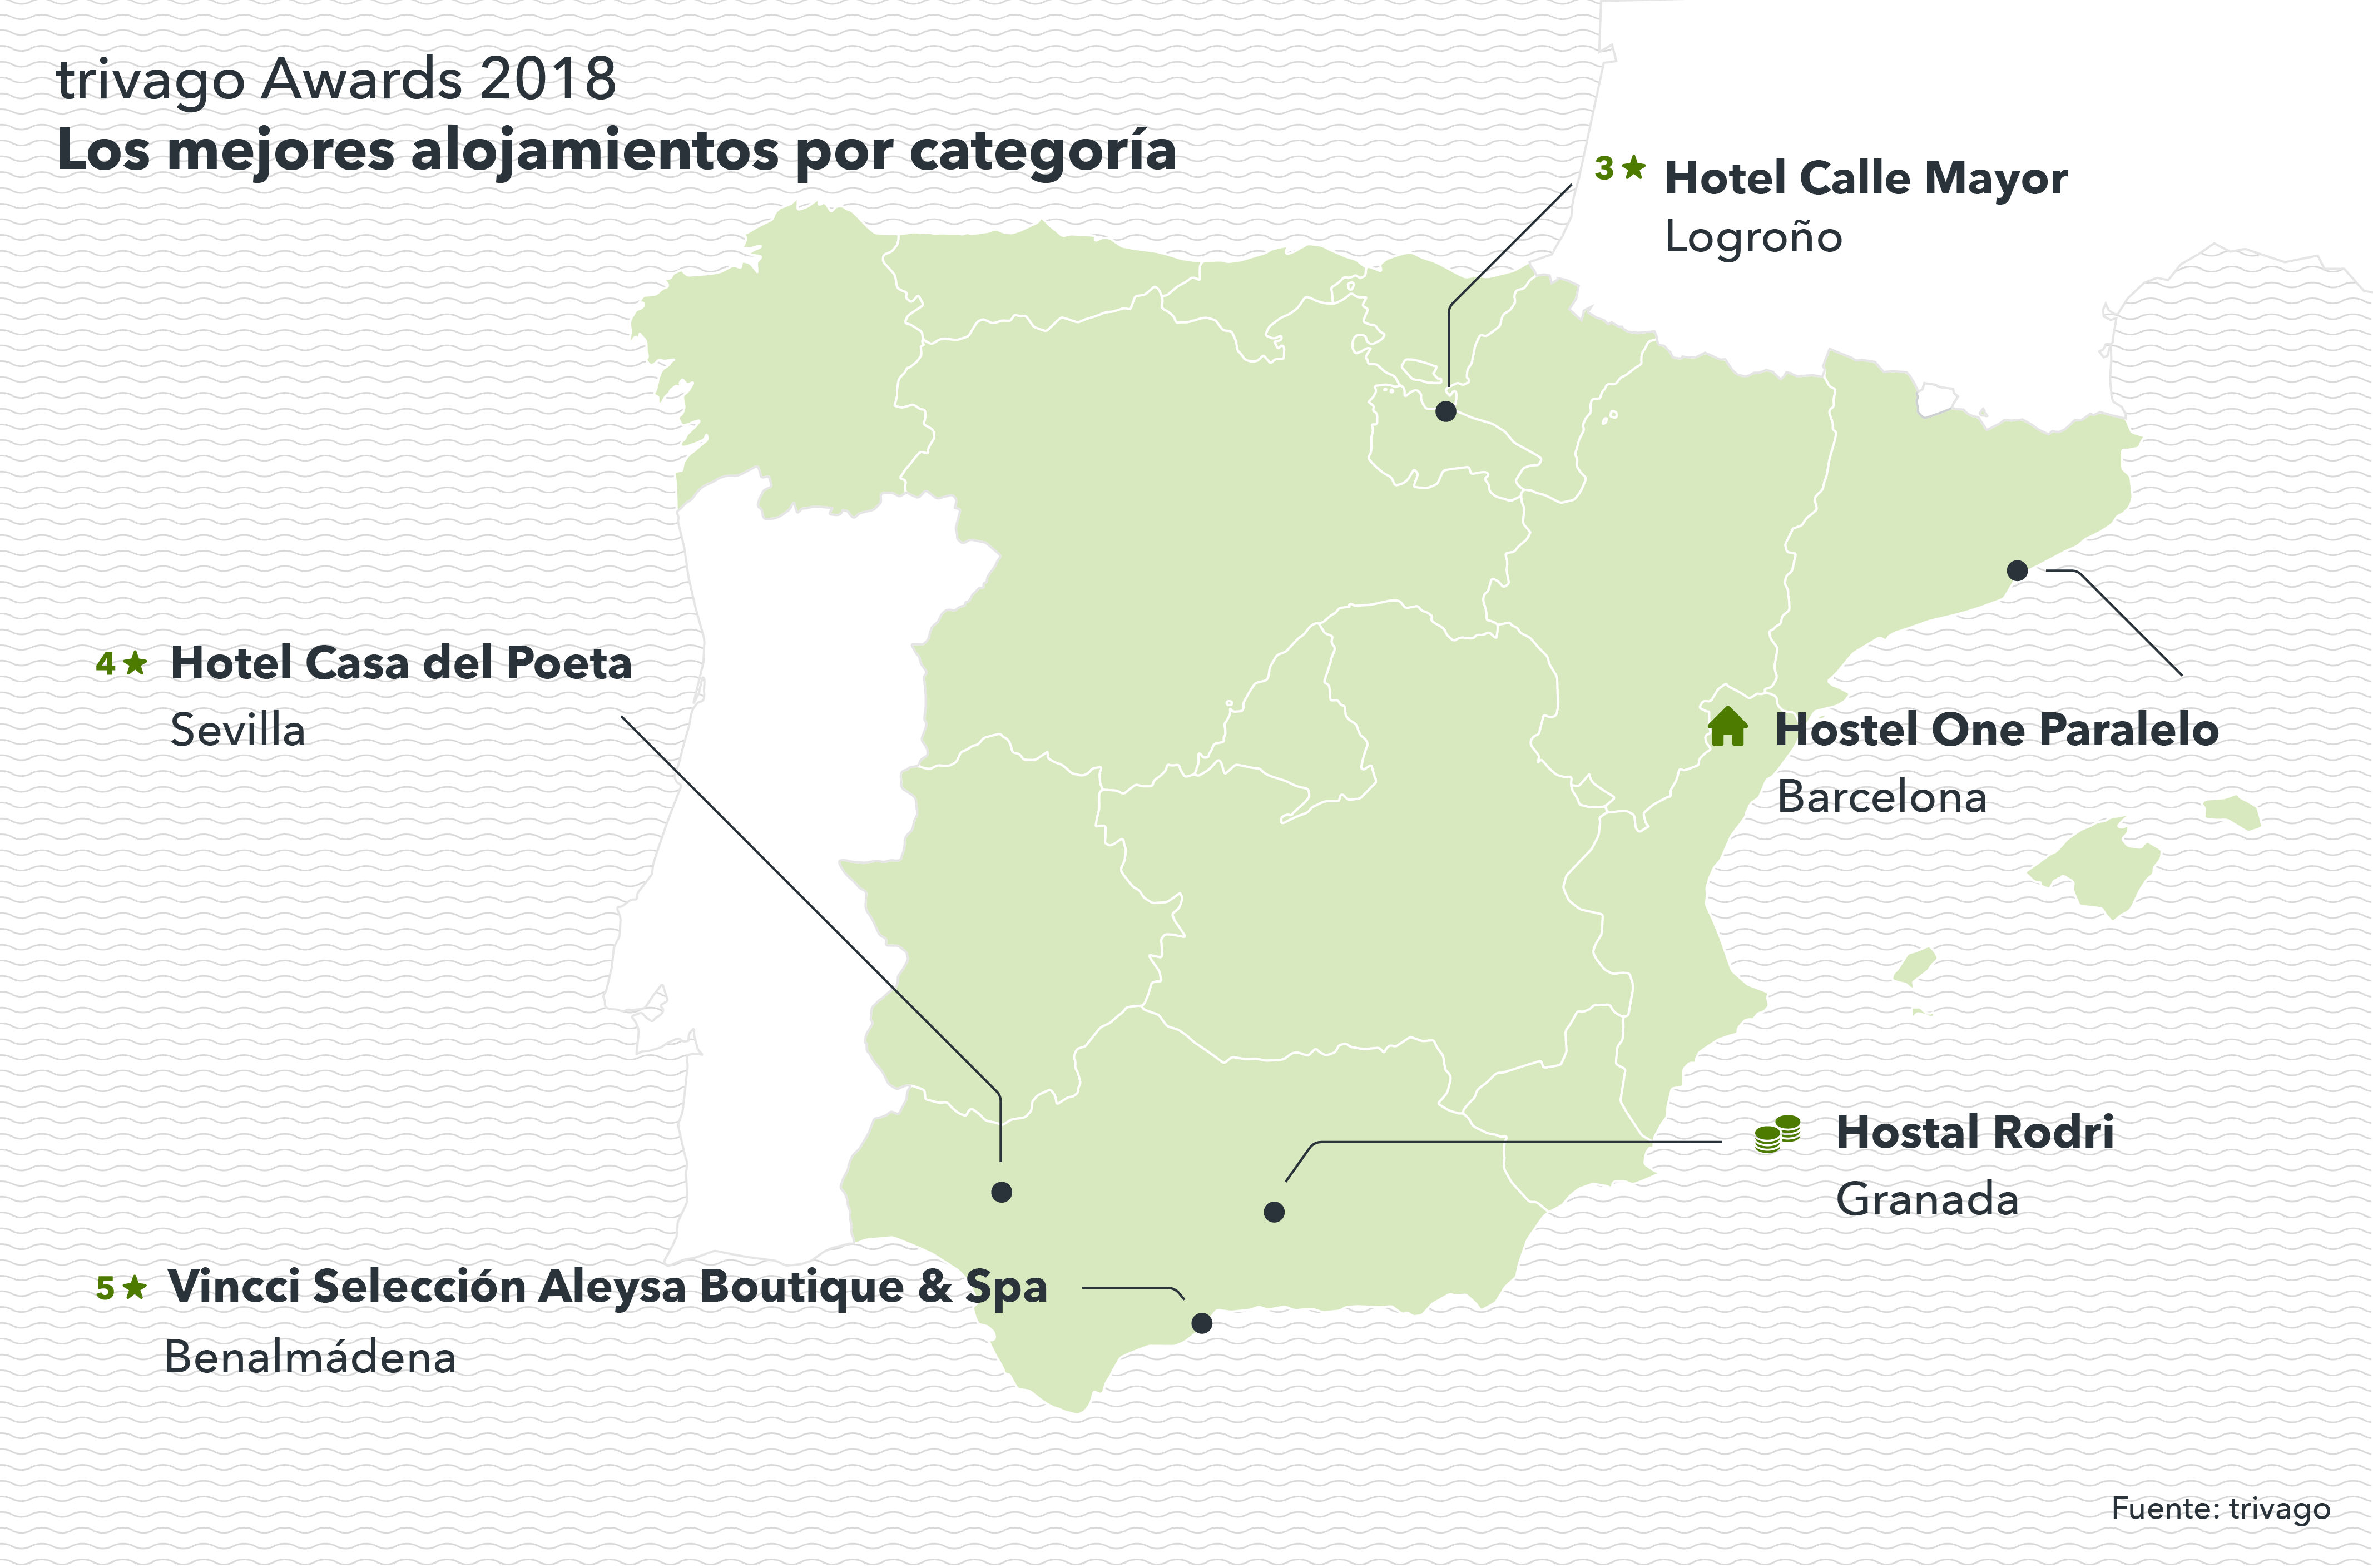 Mapa de España con los hoteles ganadores de los trivago Awards 2018